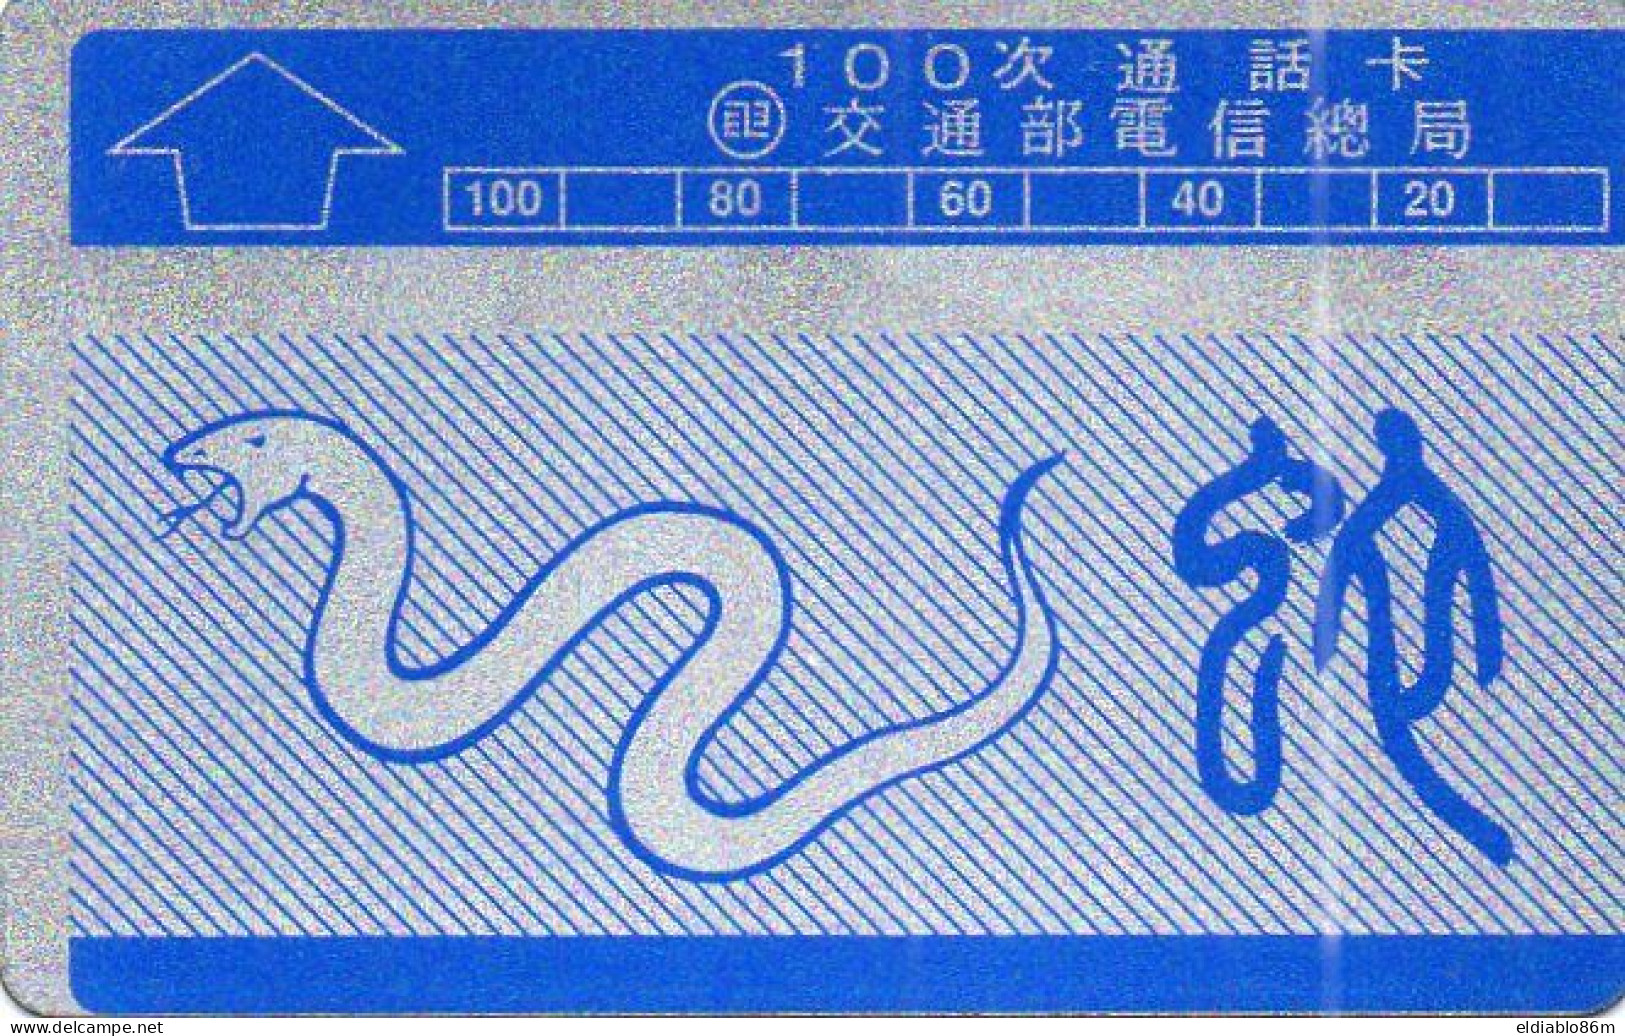 TAIWAN - L&G - BUREAU - N0013 - ZODIAC SNAKE - DUMMY CARD - SHIFT PRINTED - NO CN - Taiwan (Formosa)